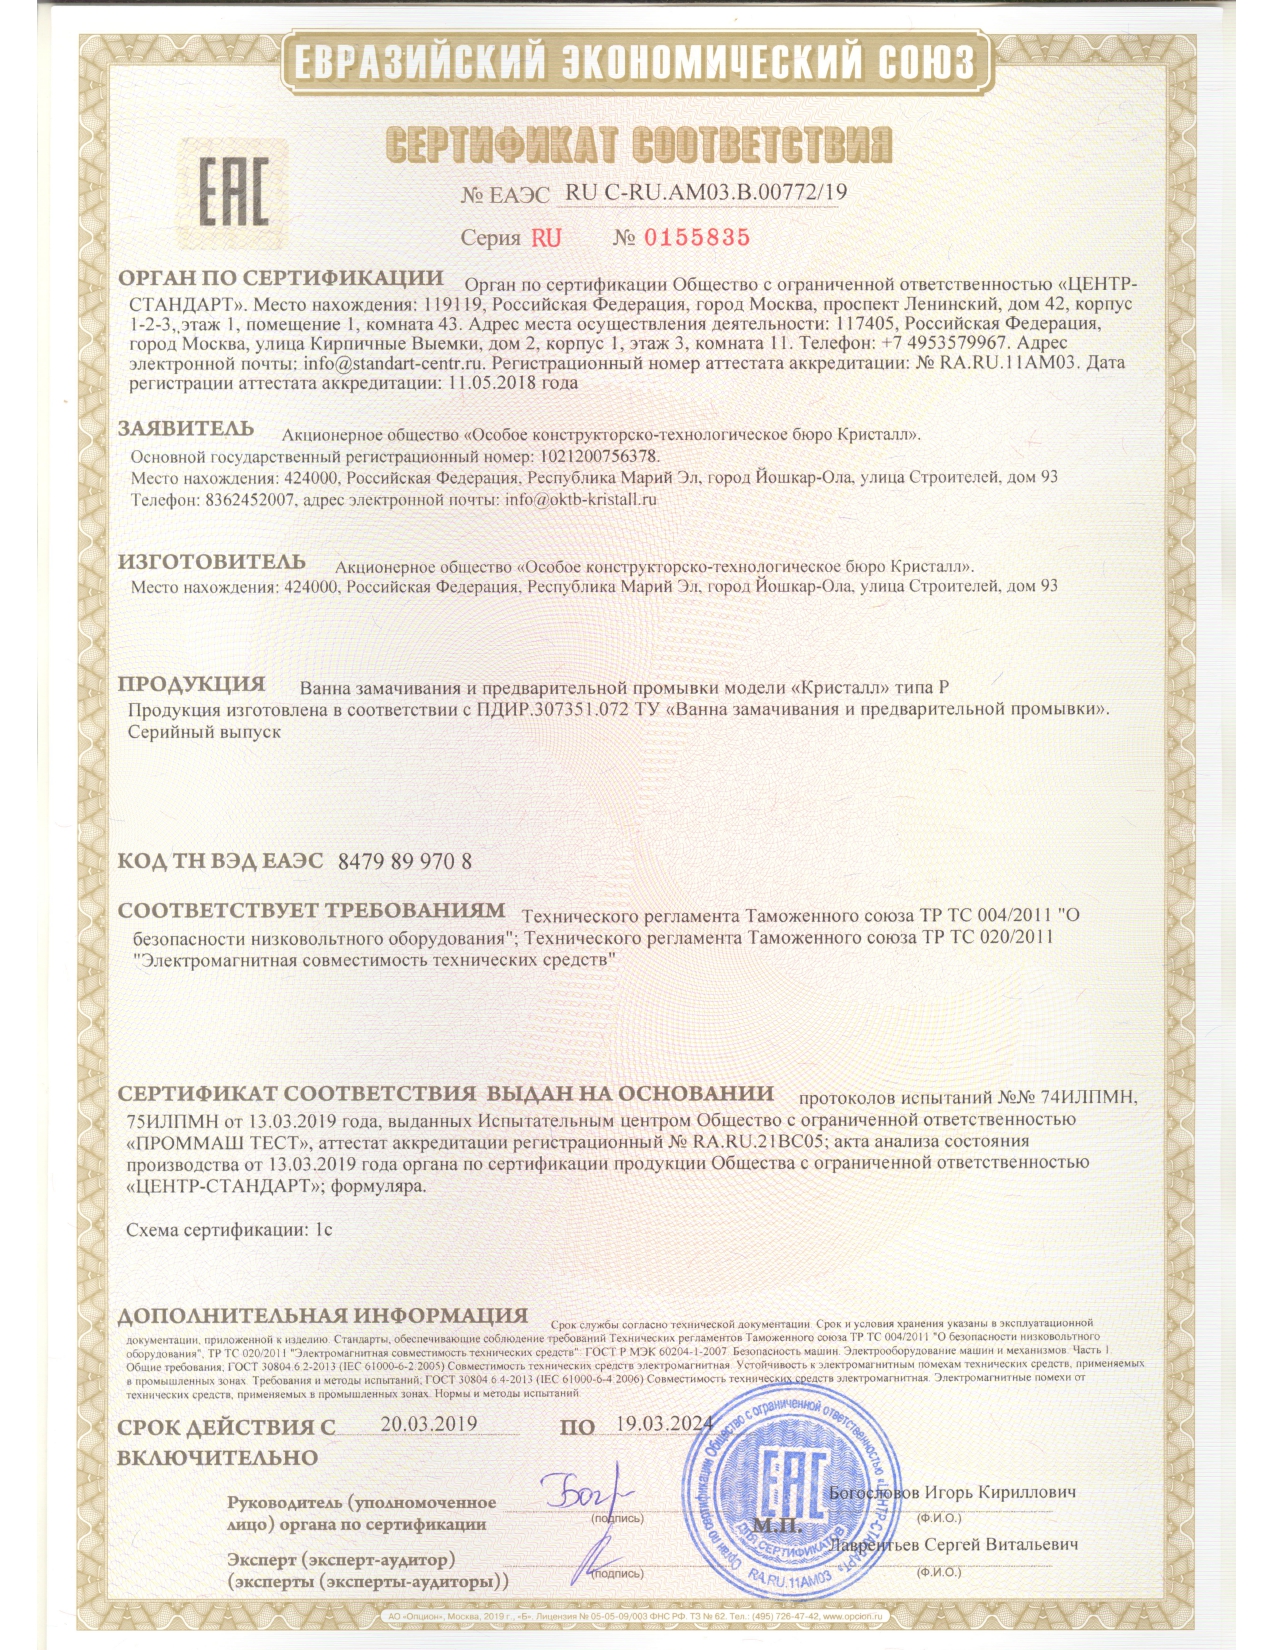 Сертификат на ванну замачивания и предварит. промывки Кристалл типа Р